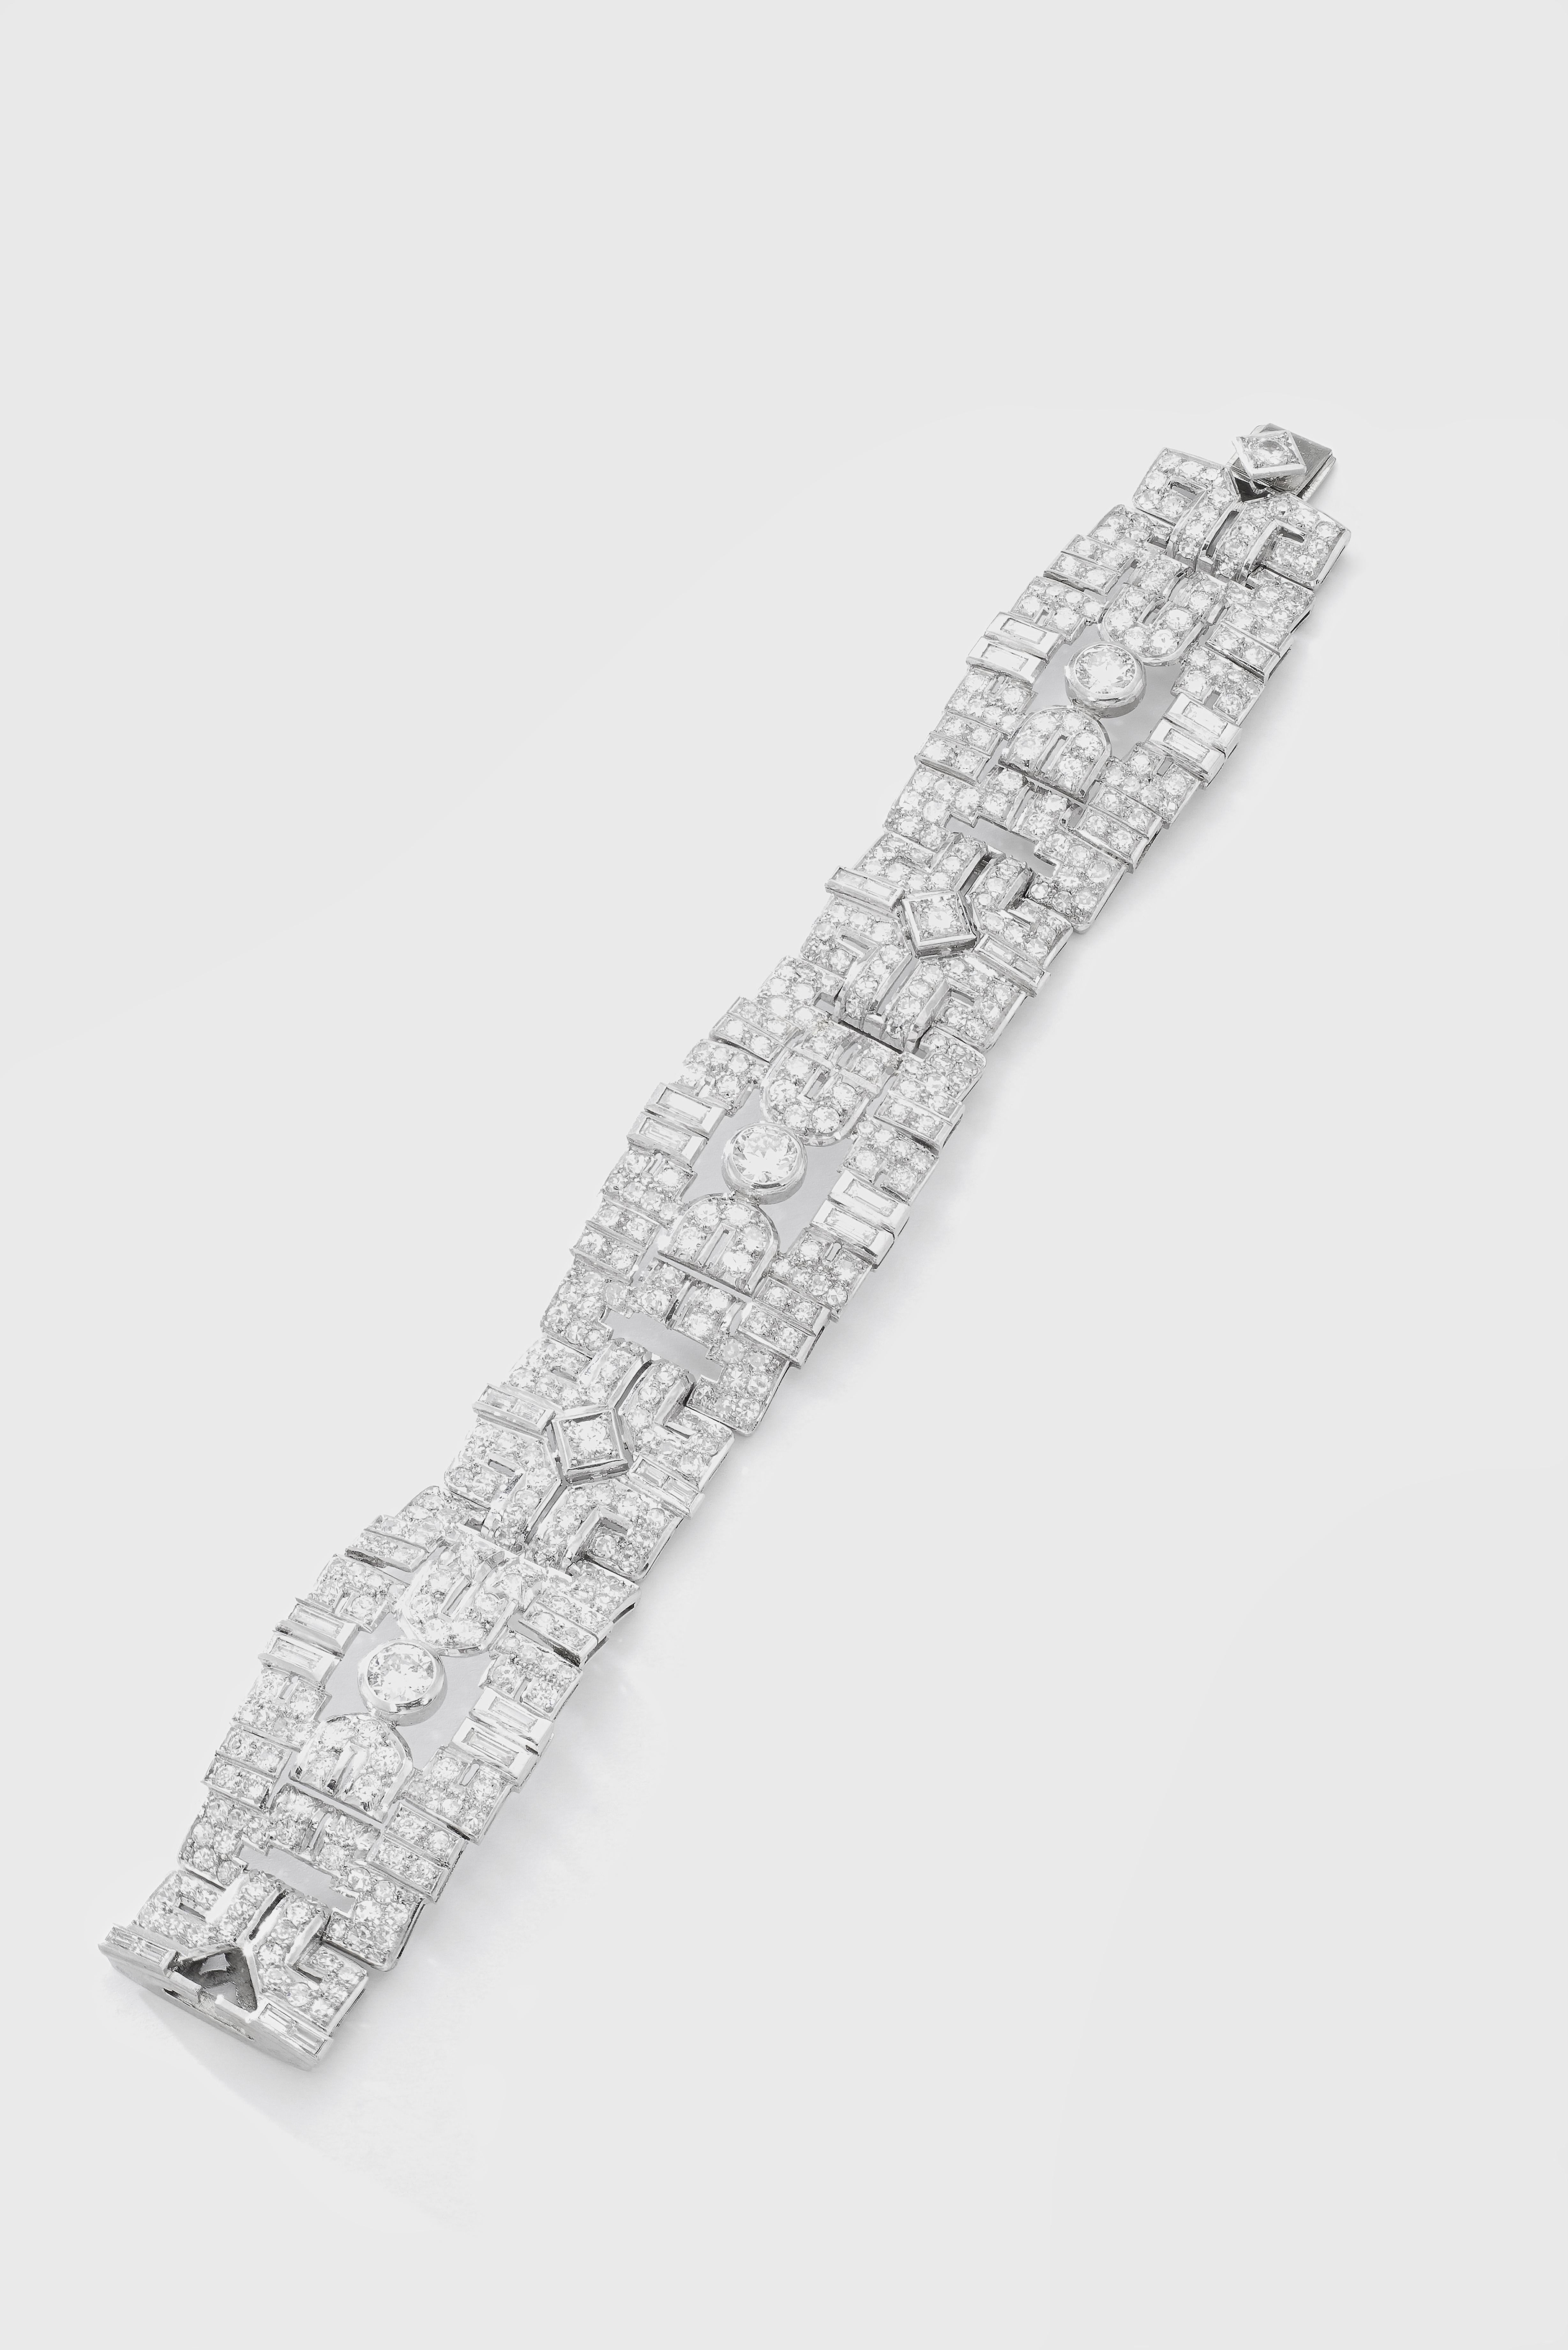 Art Deco Diamant auf Platin-Armband.
Französische Marken. Um 1930.
Breite: maximal 2,50 Zentimeter.
Länge: 18.00 Zentimeter.